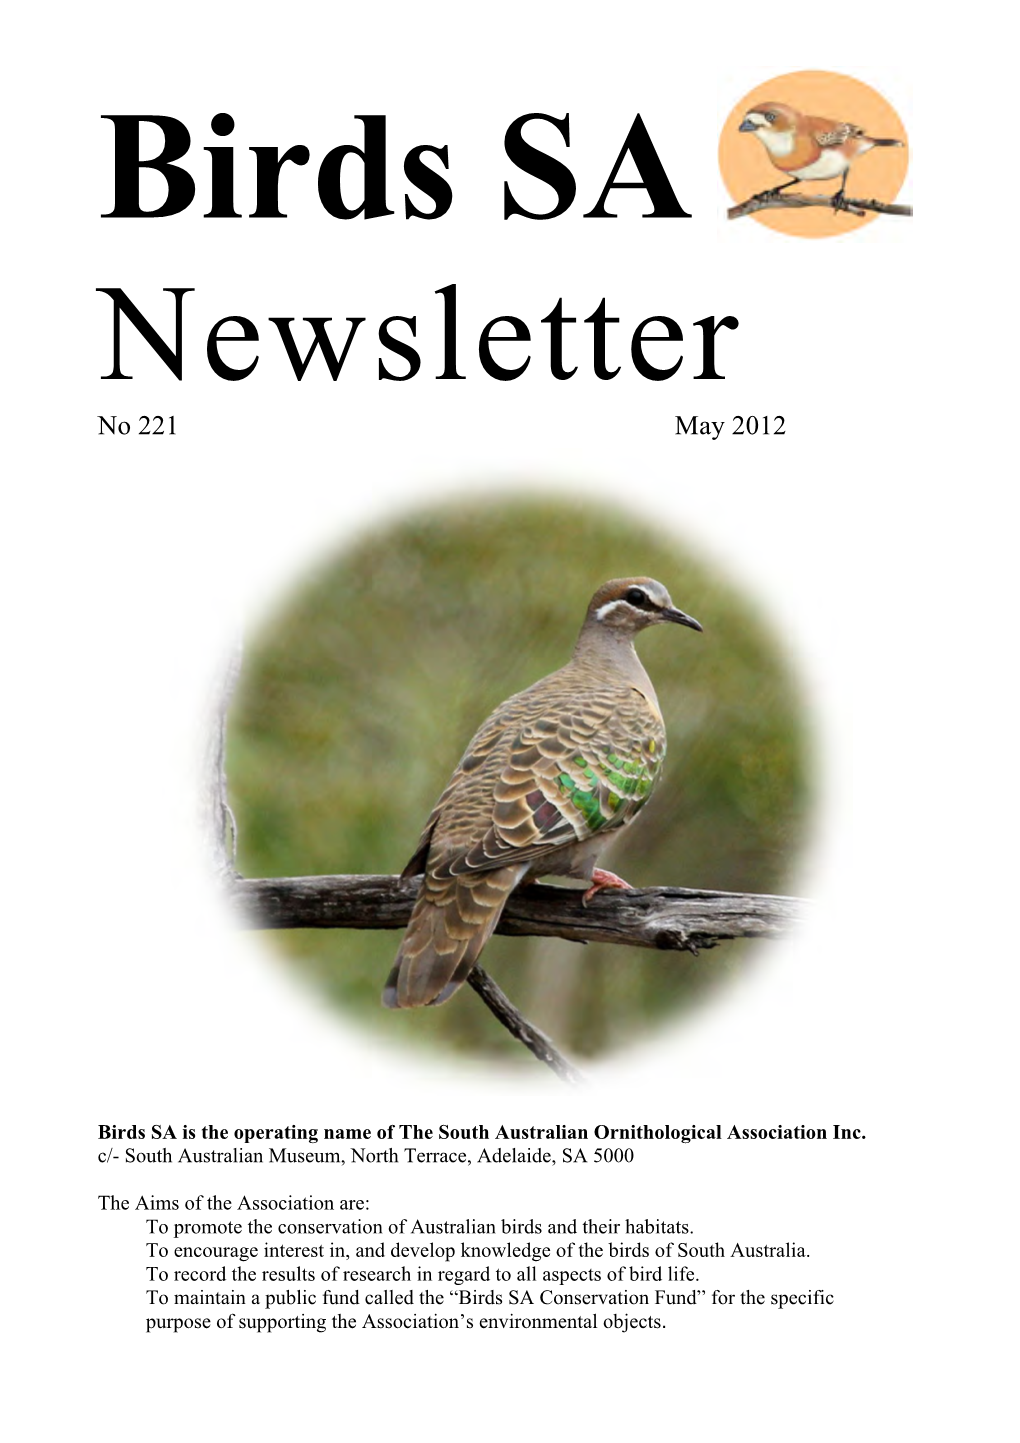 Birds SA Newsletter No. 222, May 2012